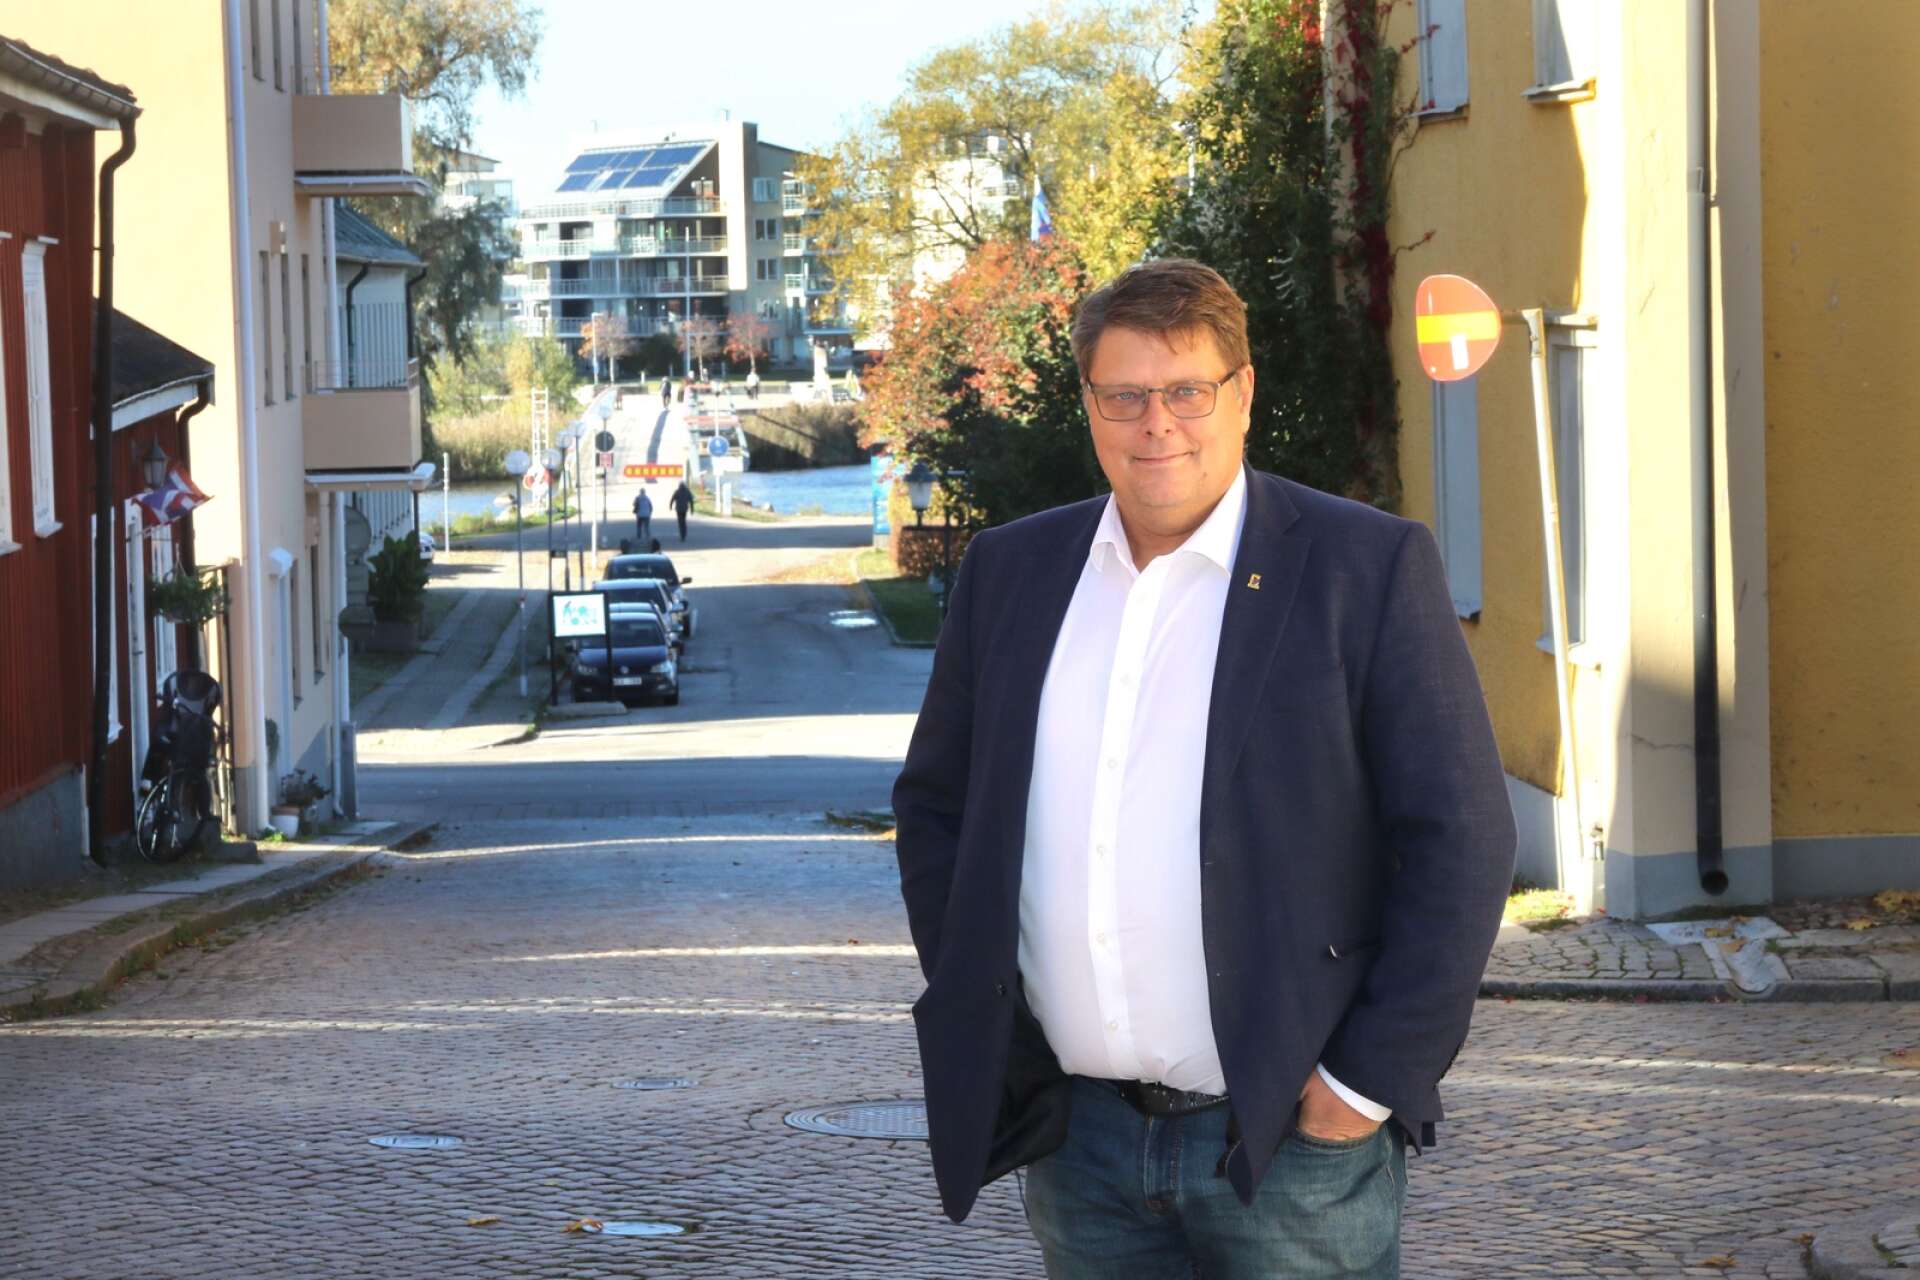 Kommunstyrelsens ordförande Johan Abrahamsson och Moderaterna introducerar begreppet ”Mariestad - framtidskommunen” och vill med det beskriva något som invånarna kan vara stolta över.